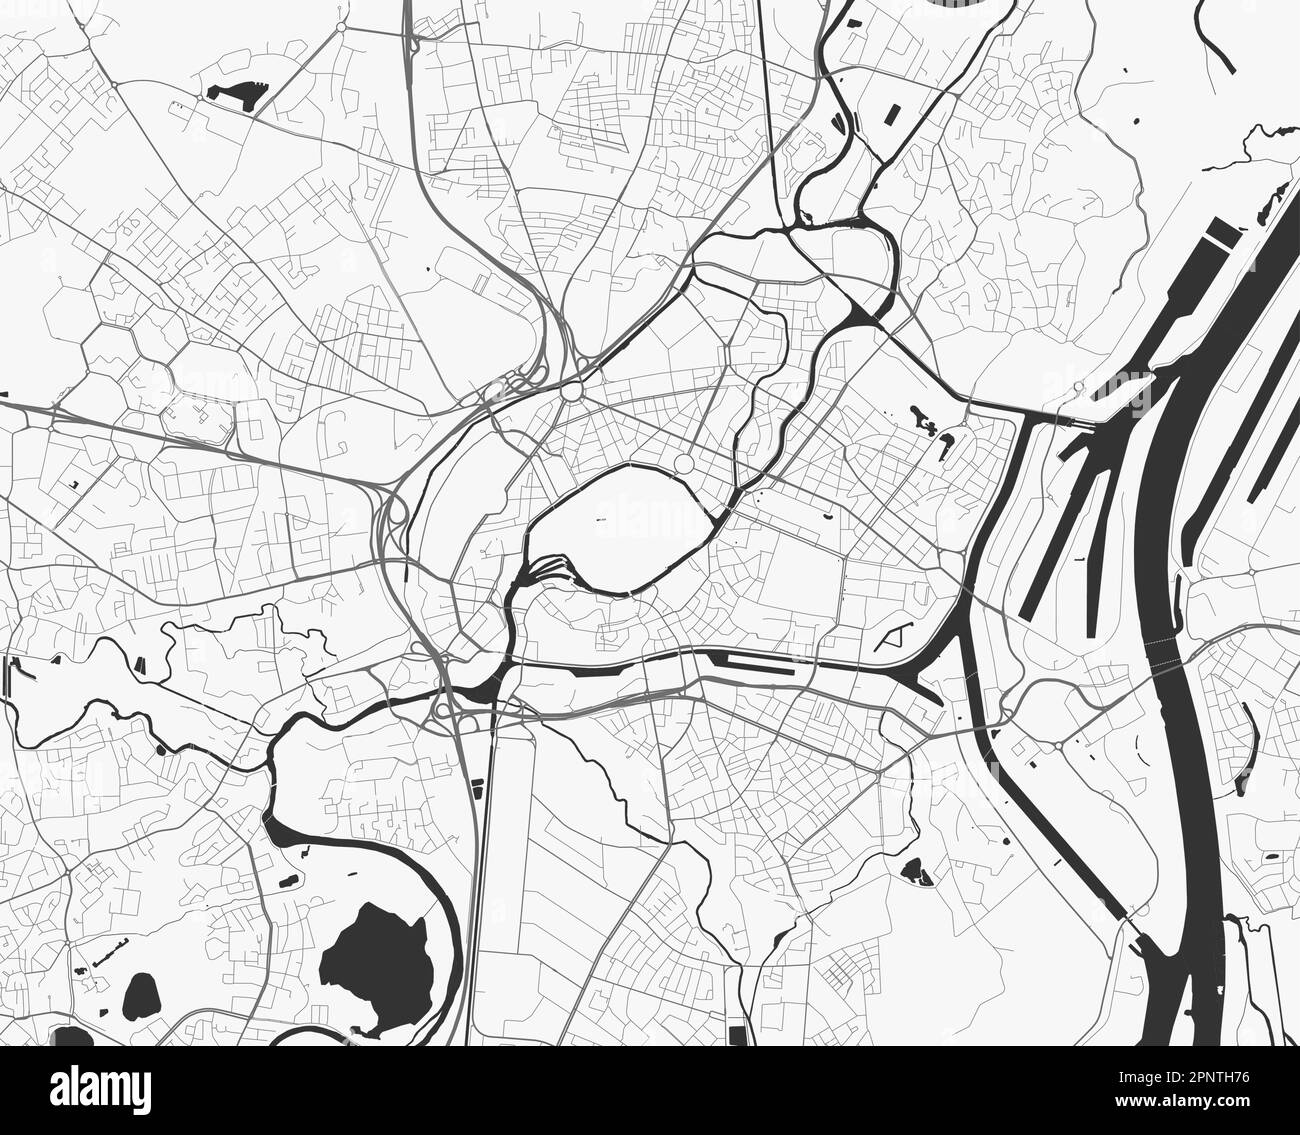 Mappa urbana di Strasburgo. Illustrazione vettoriale, poster della mappa di Strasburgo in scala di grigi. Immagine della mappa stradale con strade, vista dell'area metropolitana. Illustrazione Vettoriale